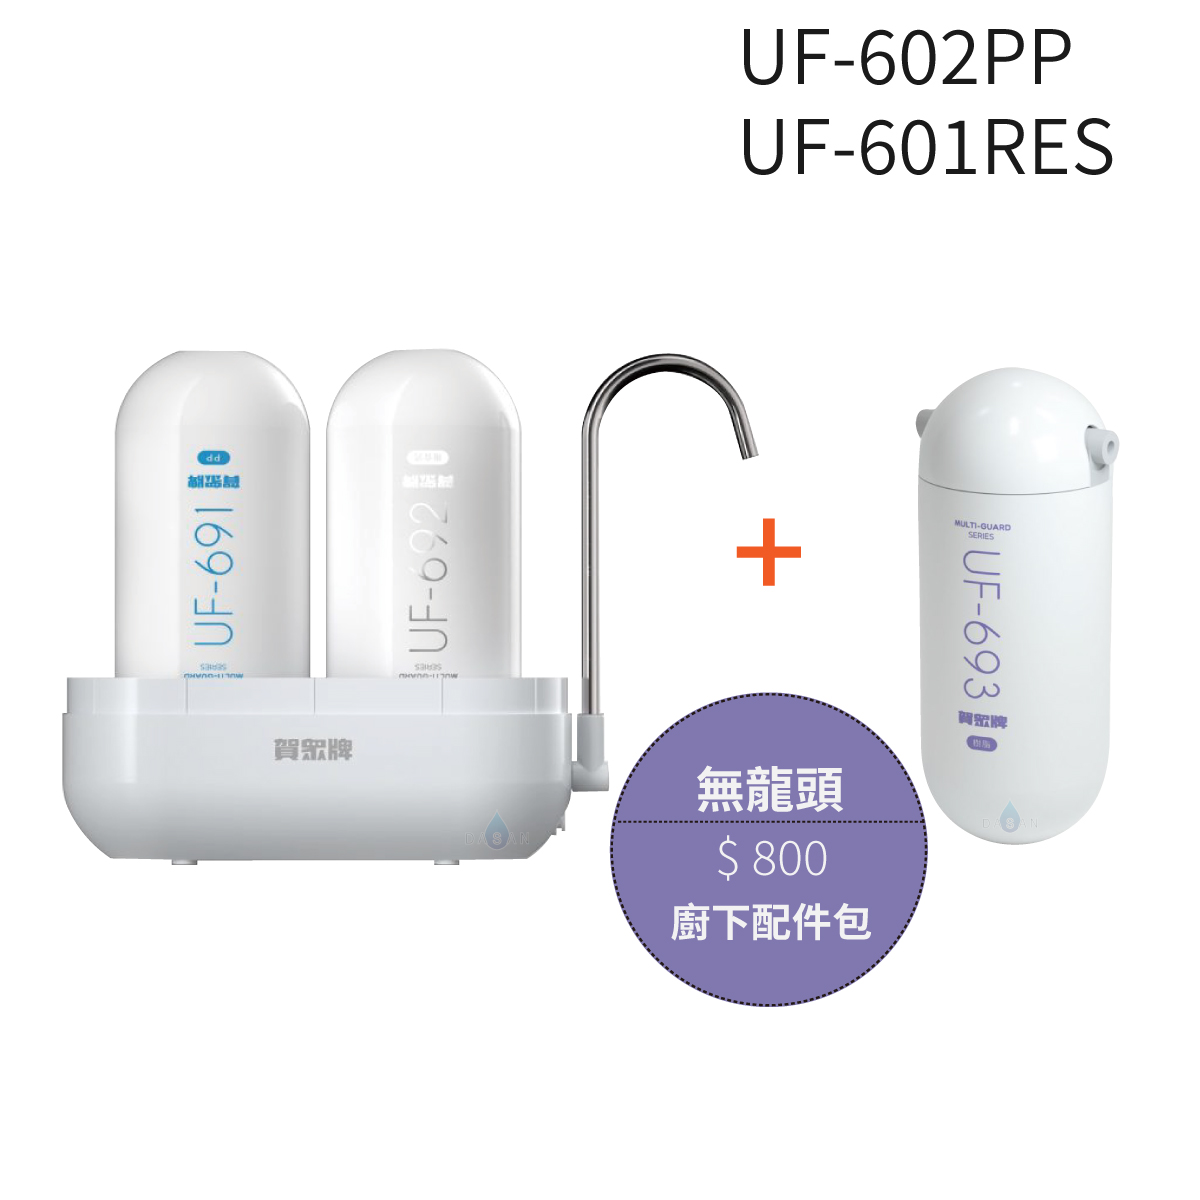 【賀眾牌】UF-602PP 複合式防衛淨水器潔淨組+UF-601RES樹脂濾芯組+無龍頭配件包 